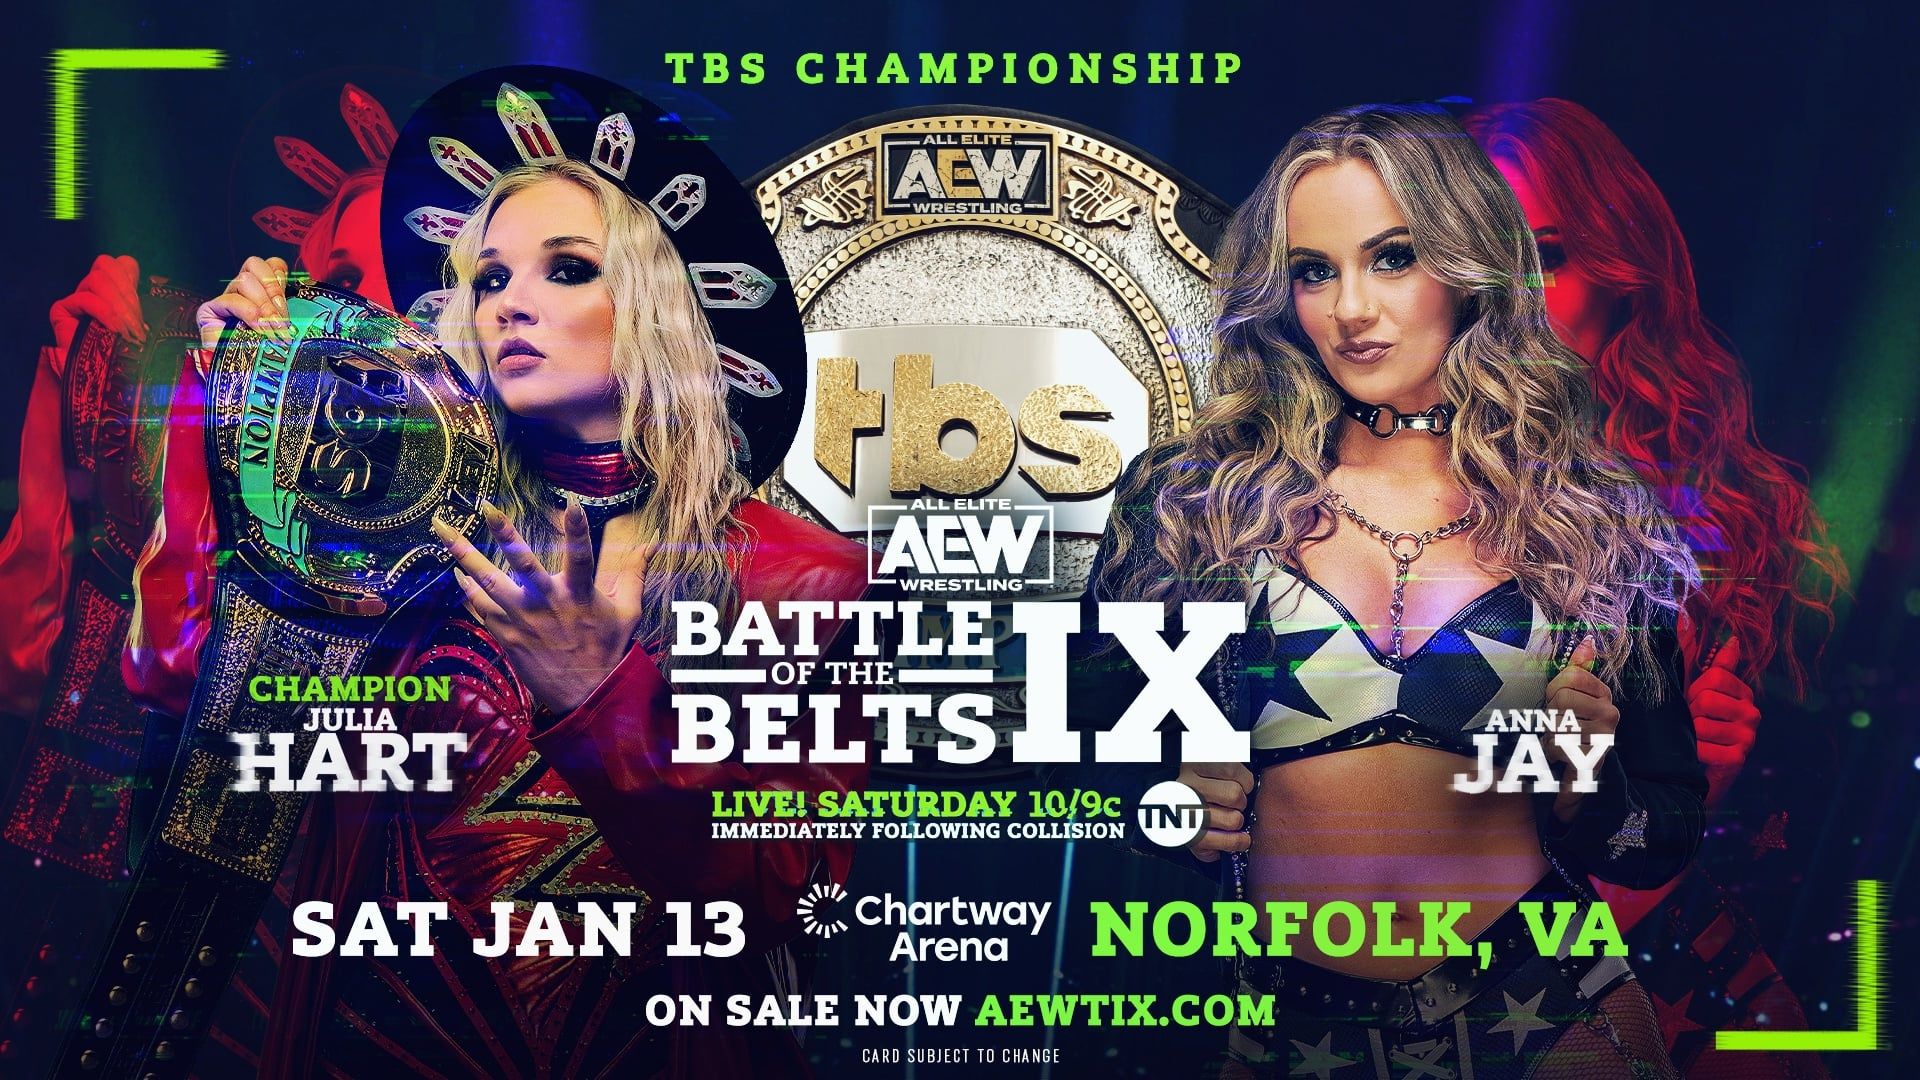 All Elite Wrestling: Battle of the Belts background